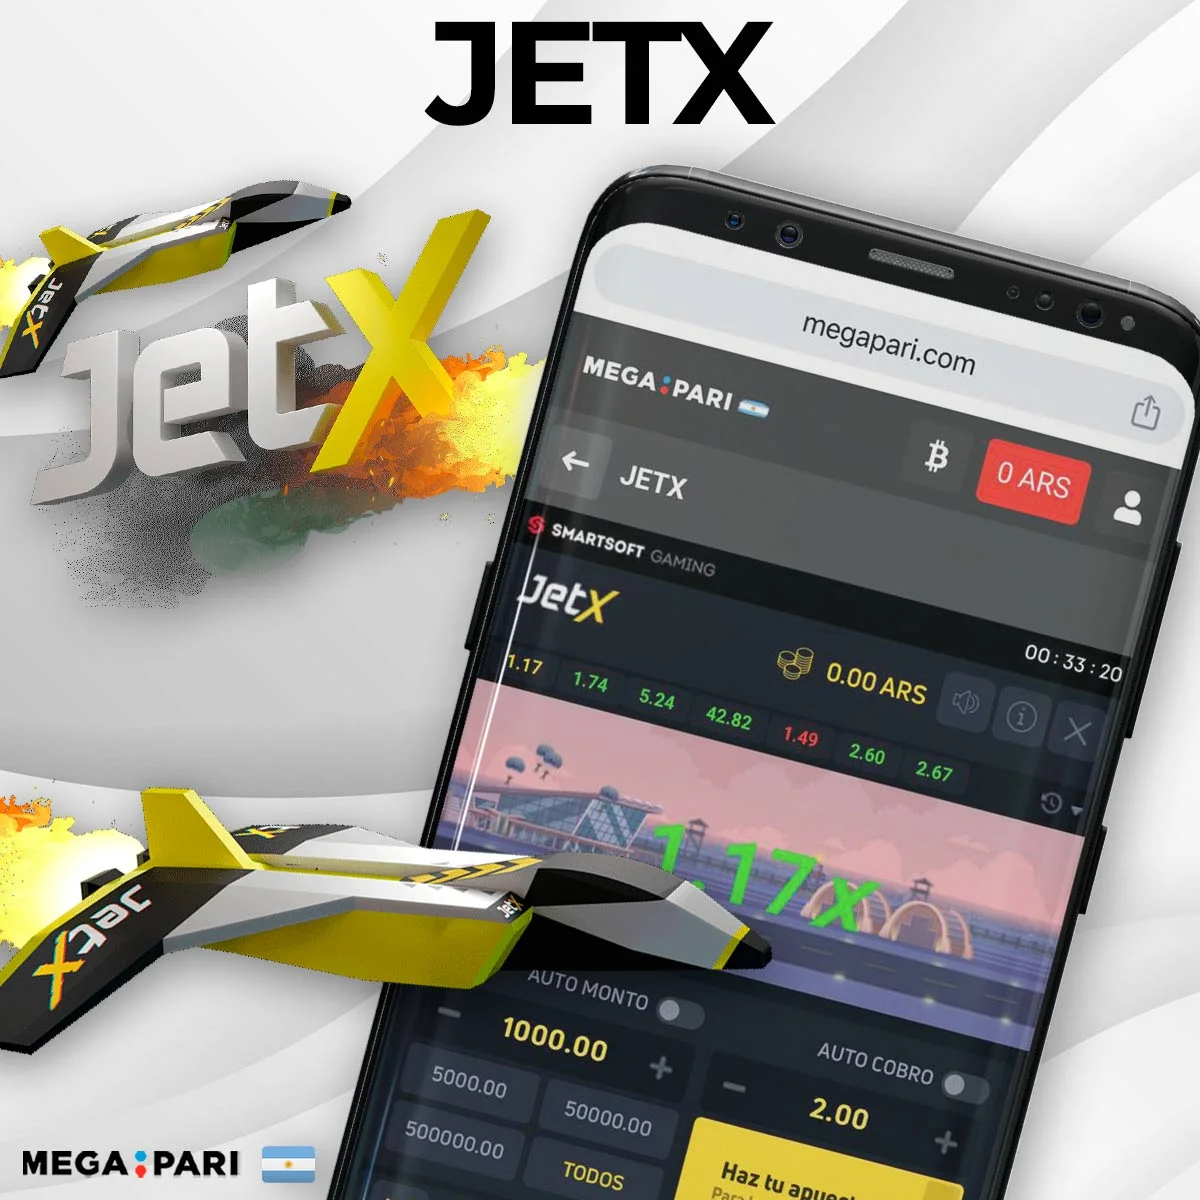 Acerca de JetX Megapari